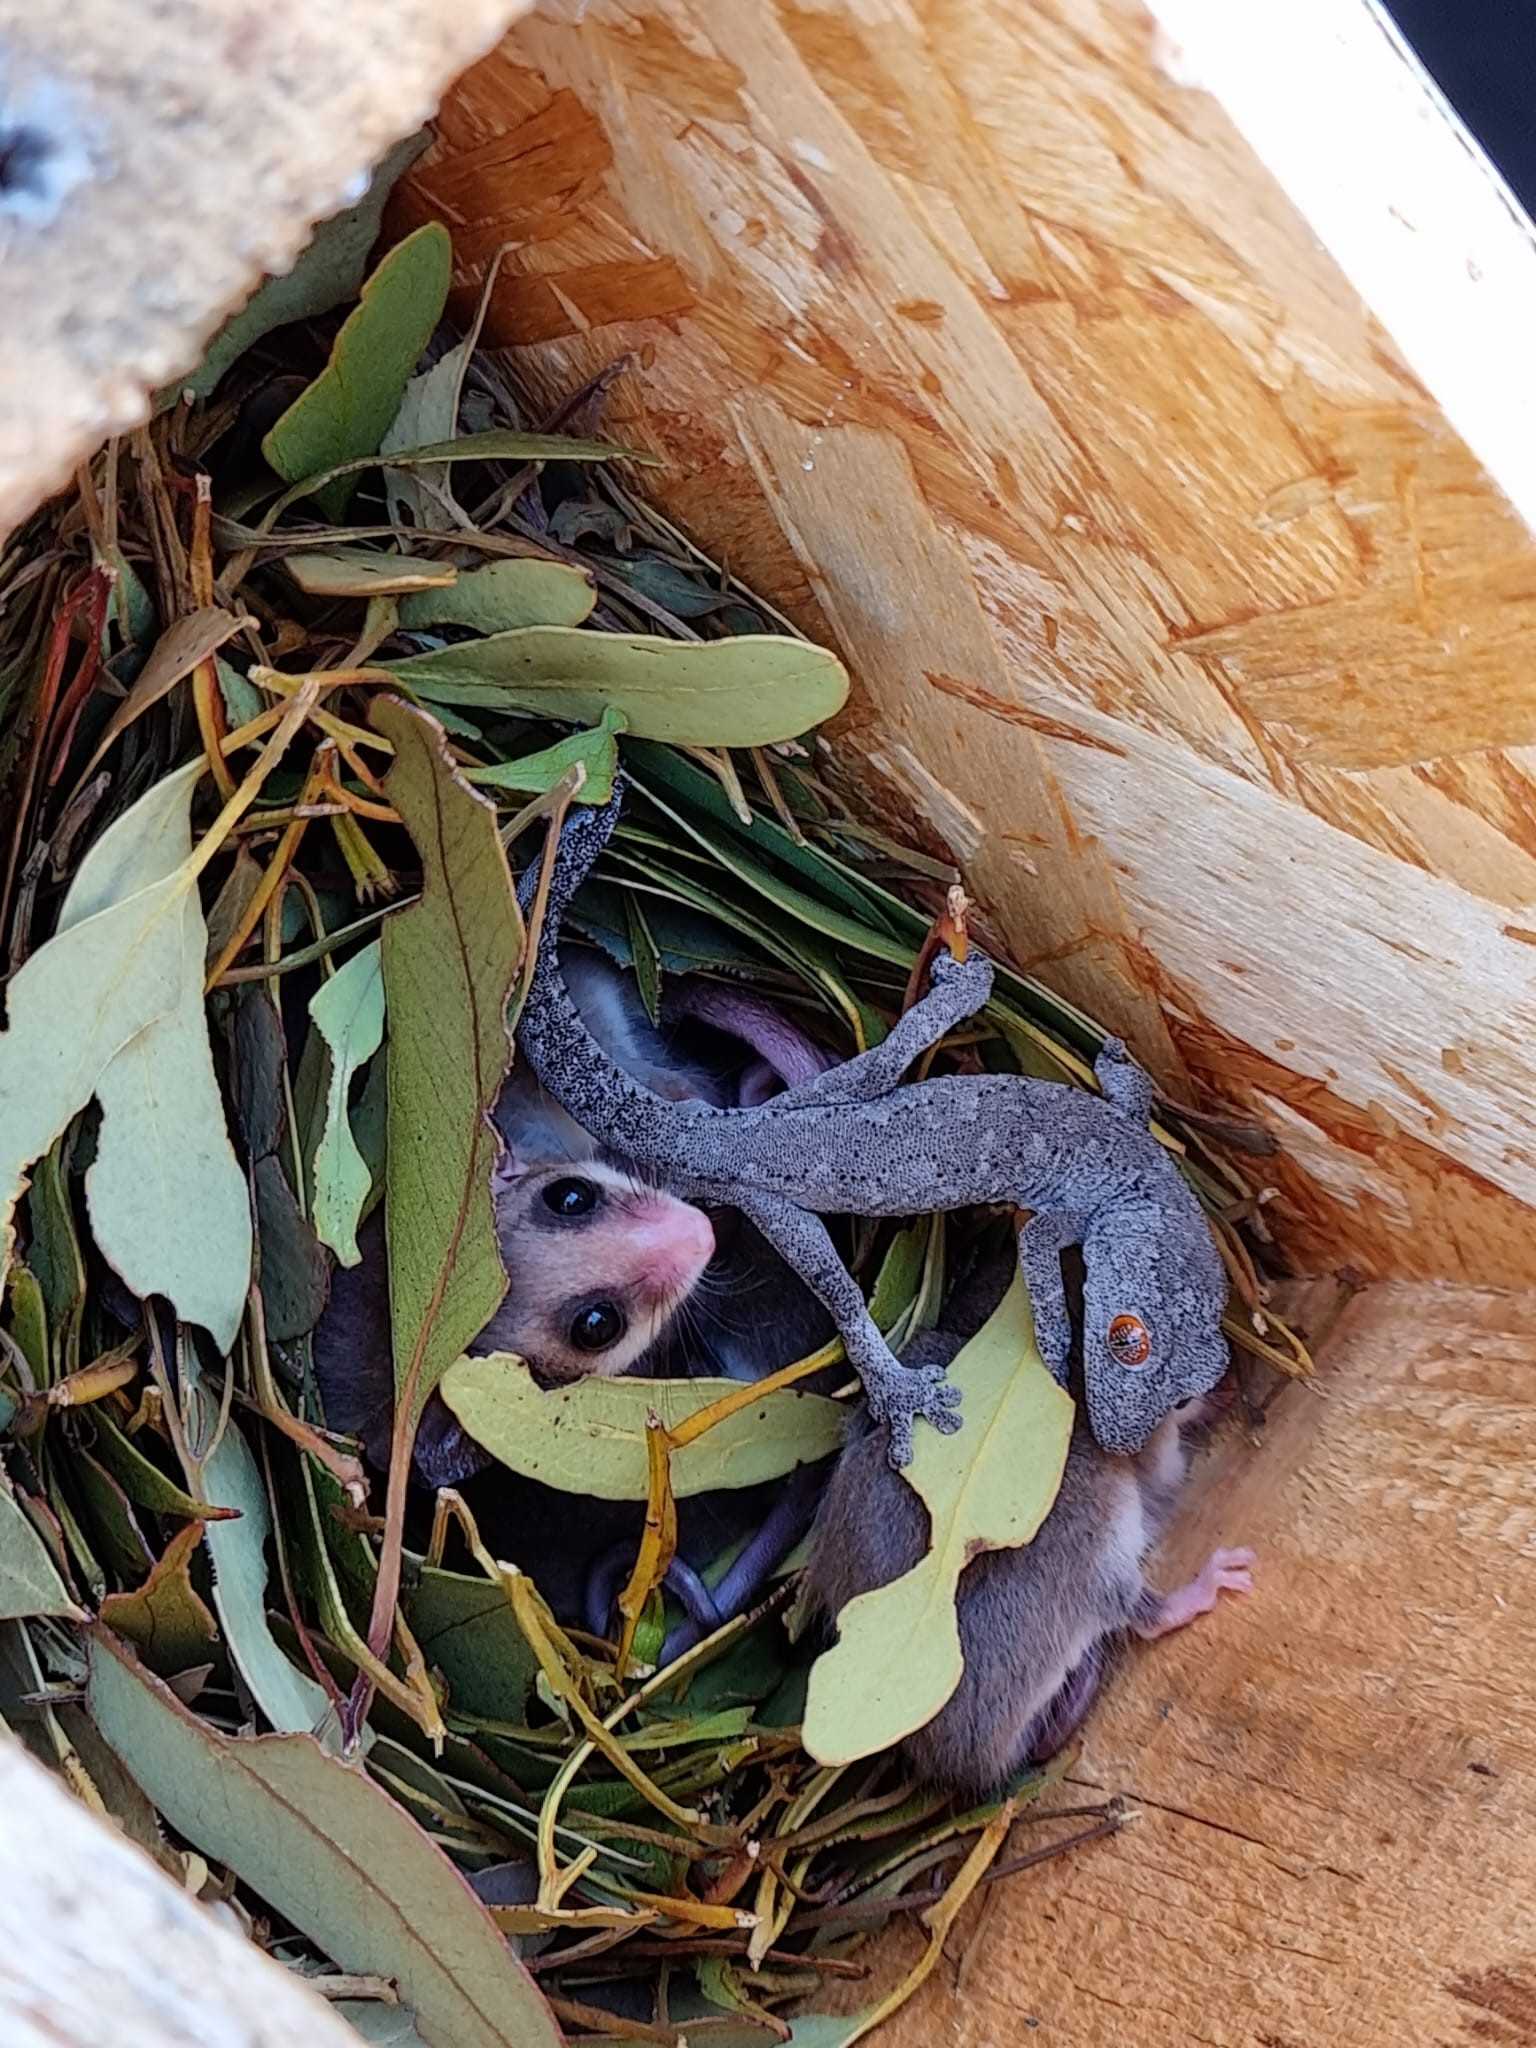 Нехватка дупел в австралийском заповеднике вынудила геккона поселиться в гнезде поссумов